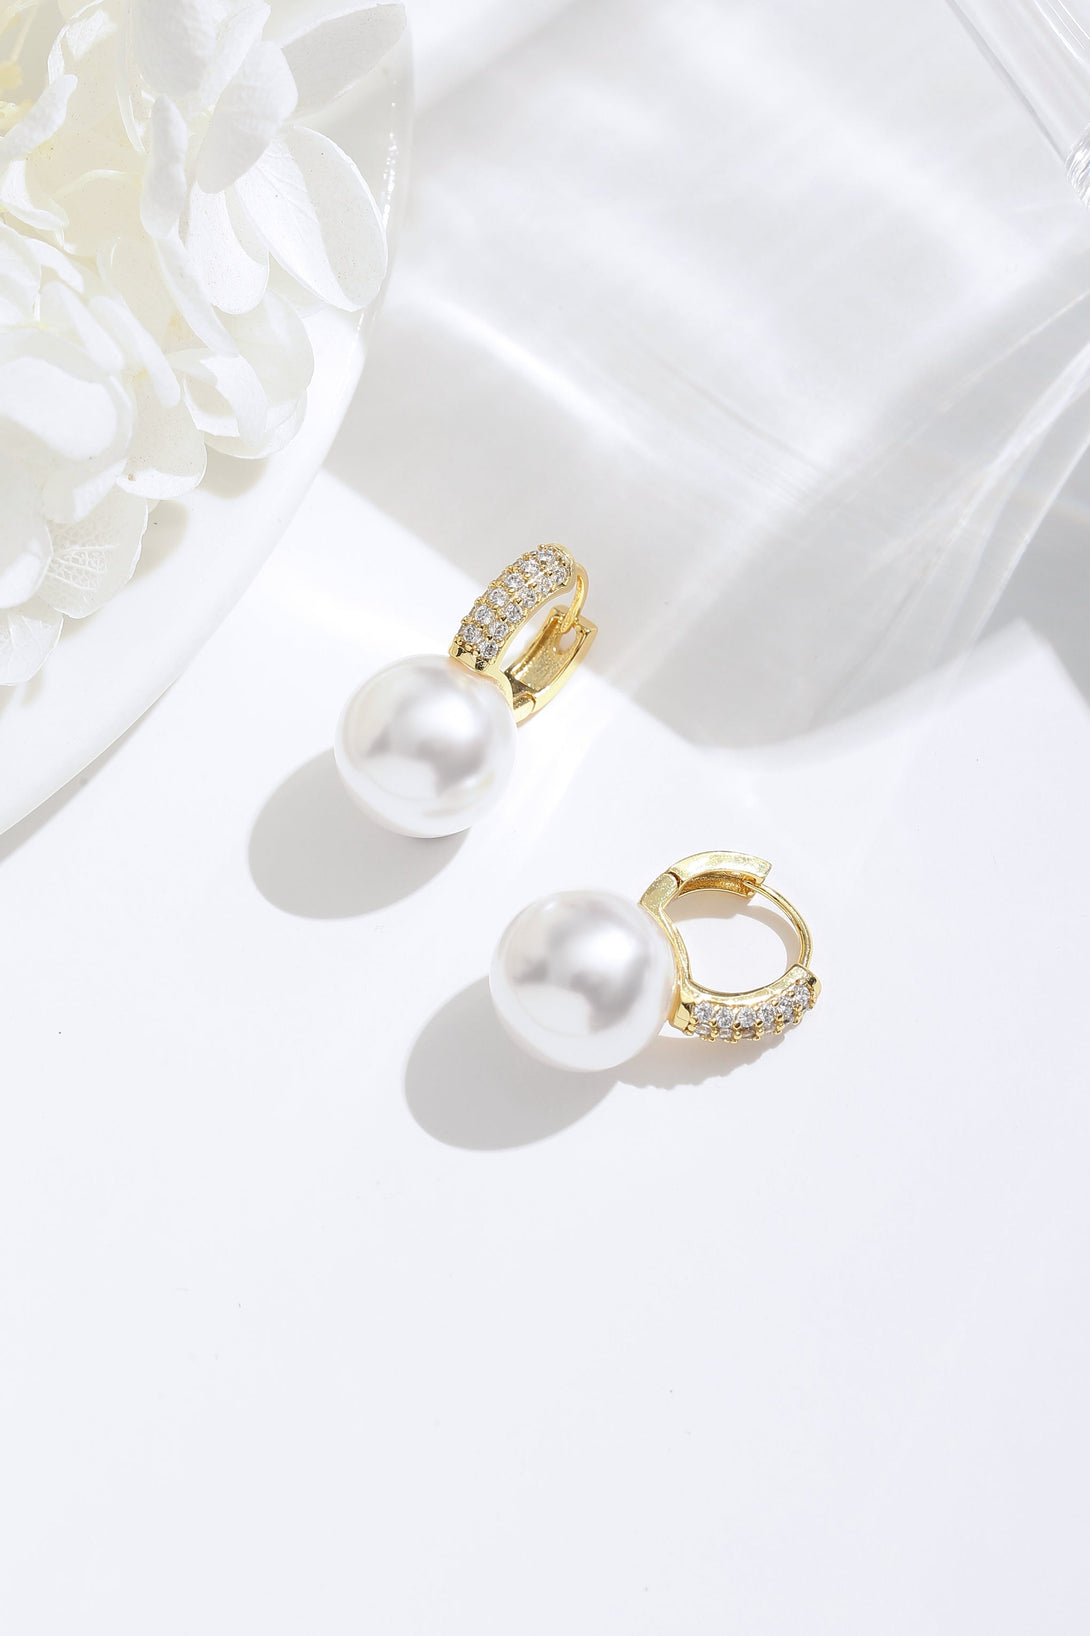 Golden Pearl Hoop with Zirconia Embellishment Earrings - Classicharms